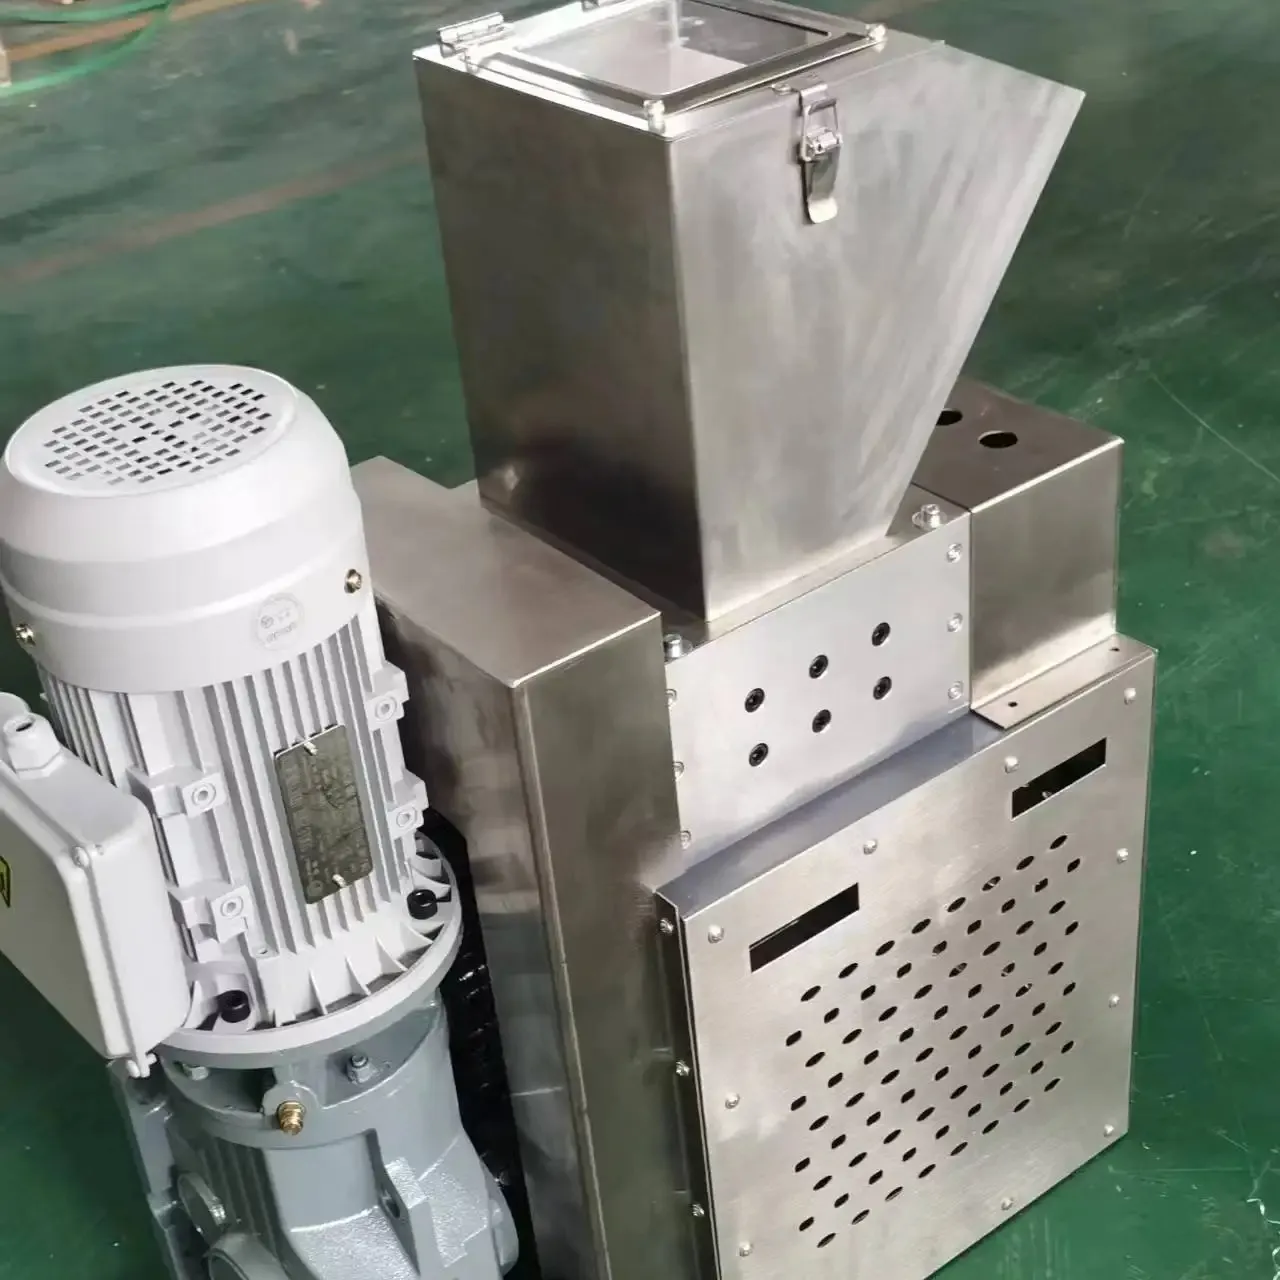 Mini machine de concassage de plastique, petit broyeur, machine de bureau de concassage de recyclage, utilisation de laboratoire domestique